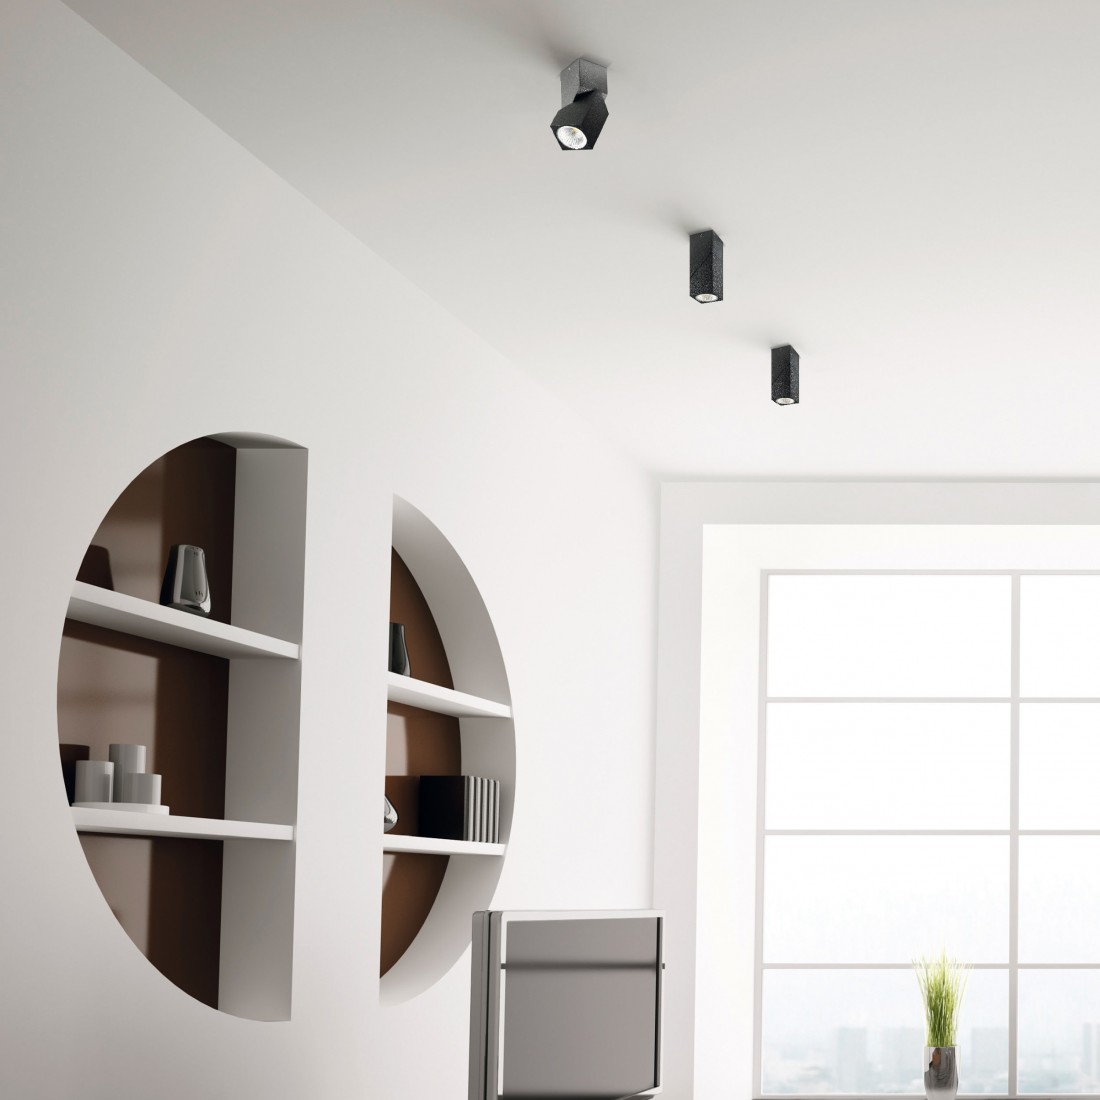 Spot PN-DIPPY 7W LED 600LM 3000°K IP40 alluminio nero bianco opaco orientabile faretto parete soffitto interno esterno